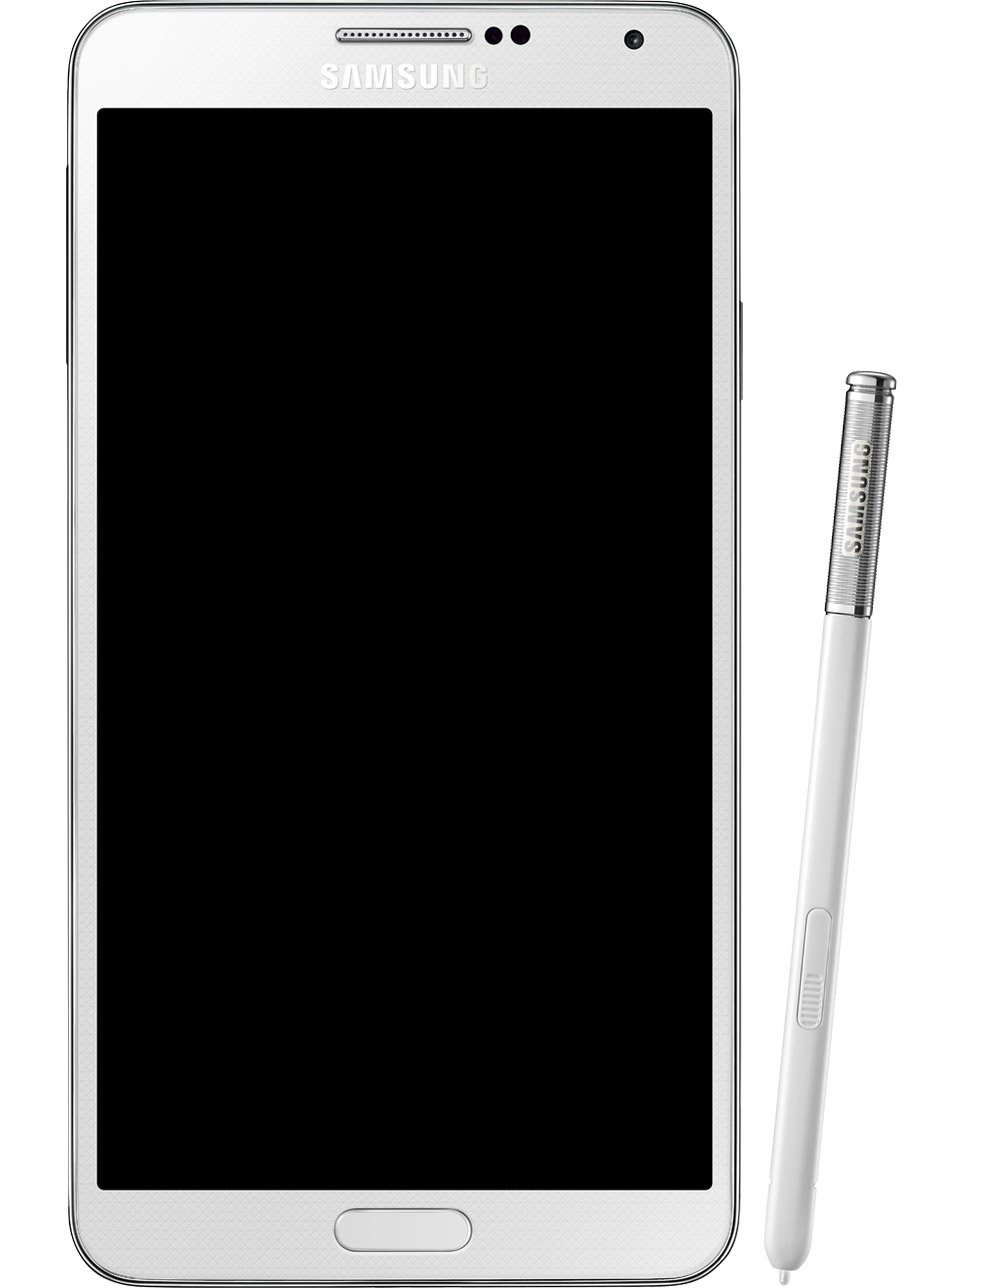 Samsung Galaxy Note 3 N9005 32GB 4G LTE WHITE Unlocked International Version